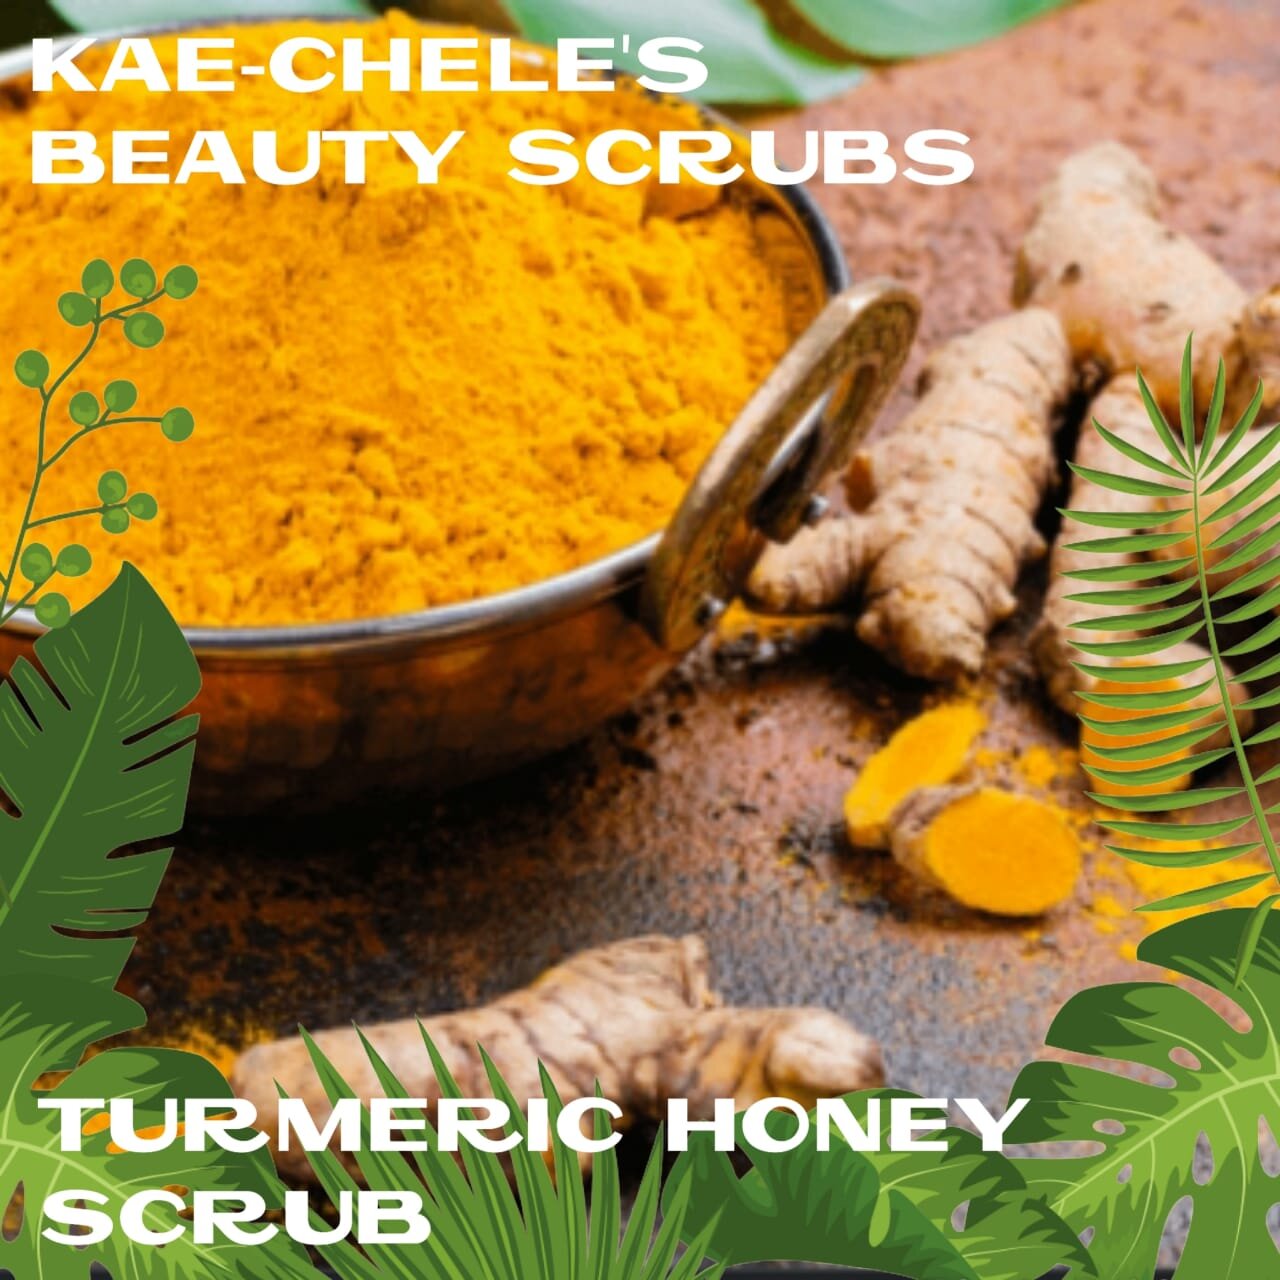 Kae-Chele's Turmeric Honey Scrub